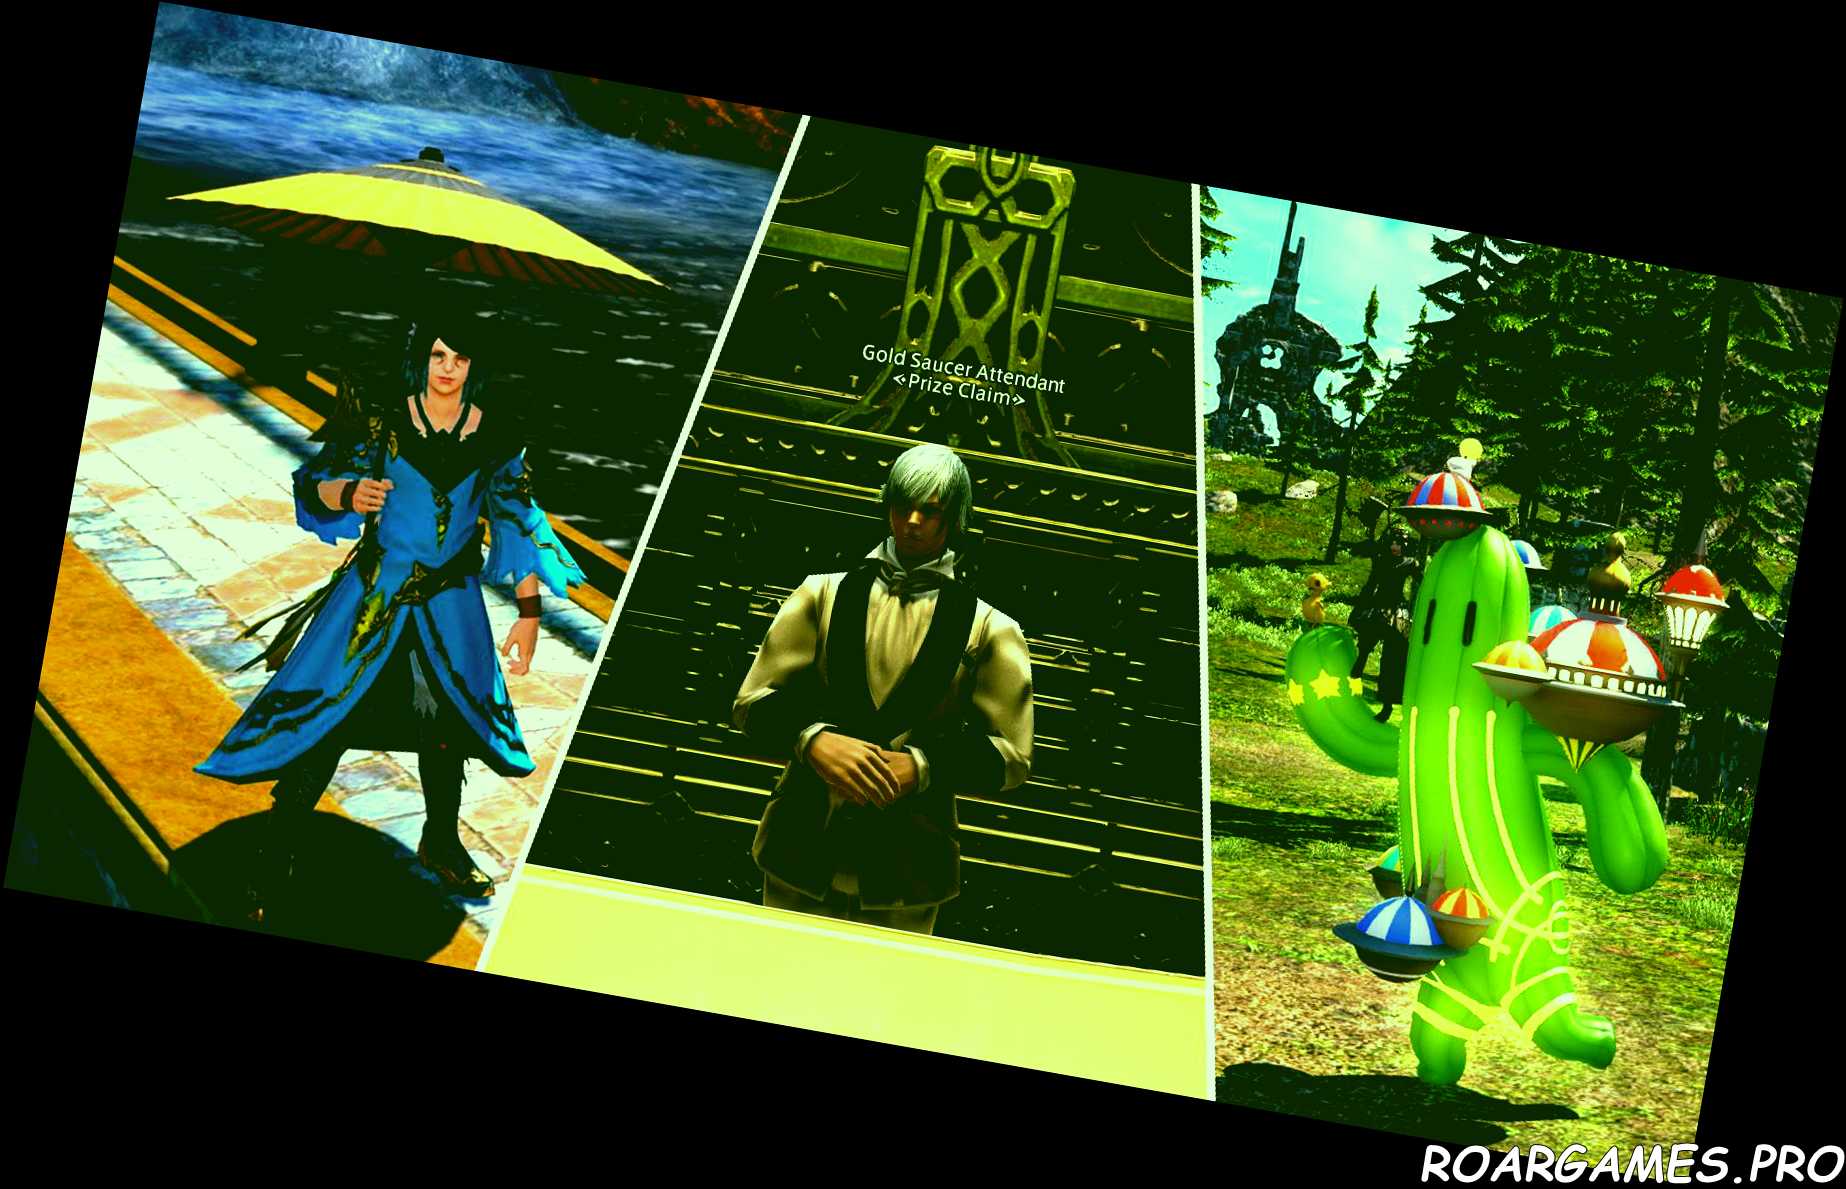 Final Fantasy 14 MGP Prize collage